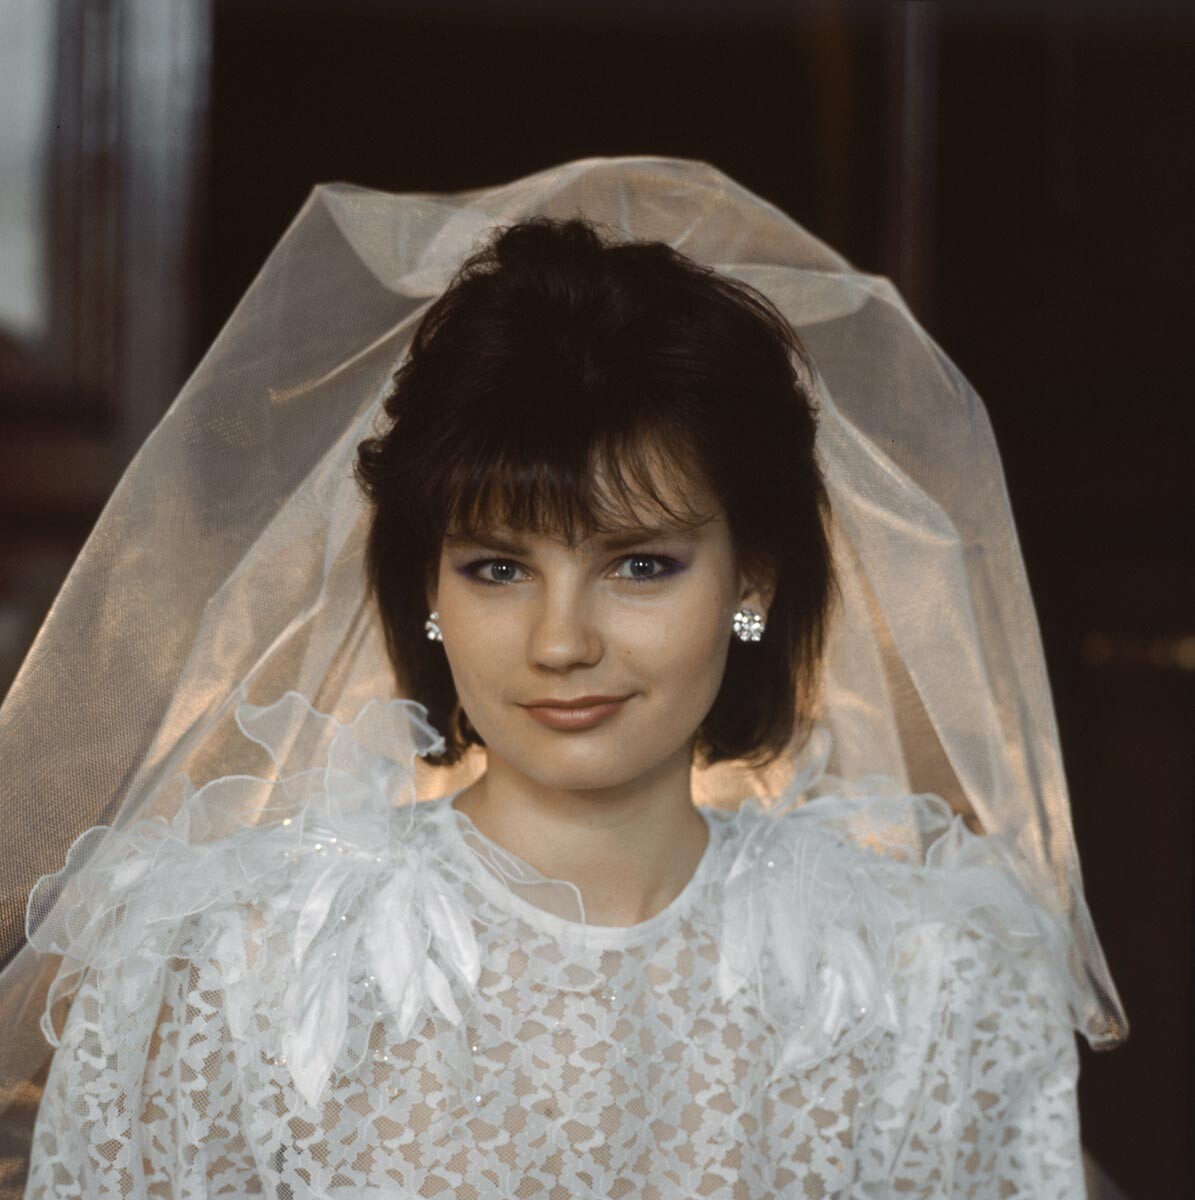 URSS. RSS de Lettonie. Riga. 30 avril 1987. Une mariée dans sa tenue nuptiale